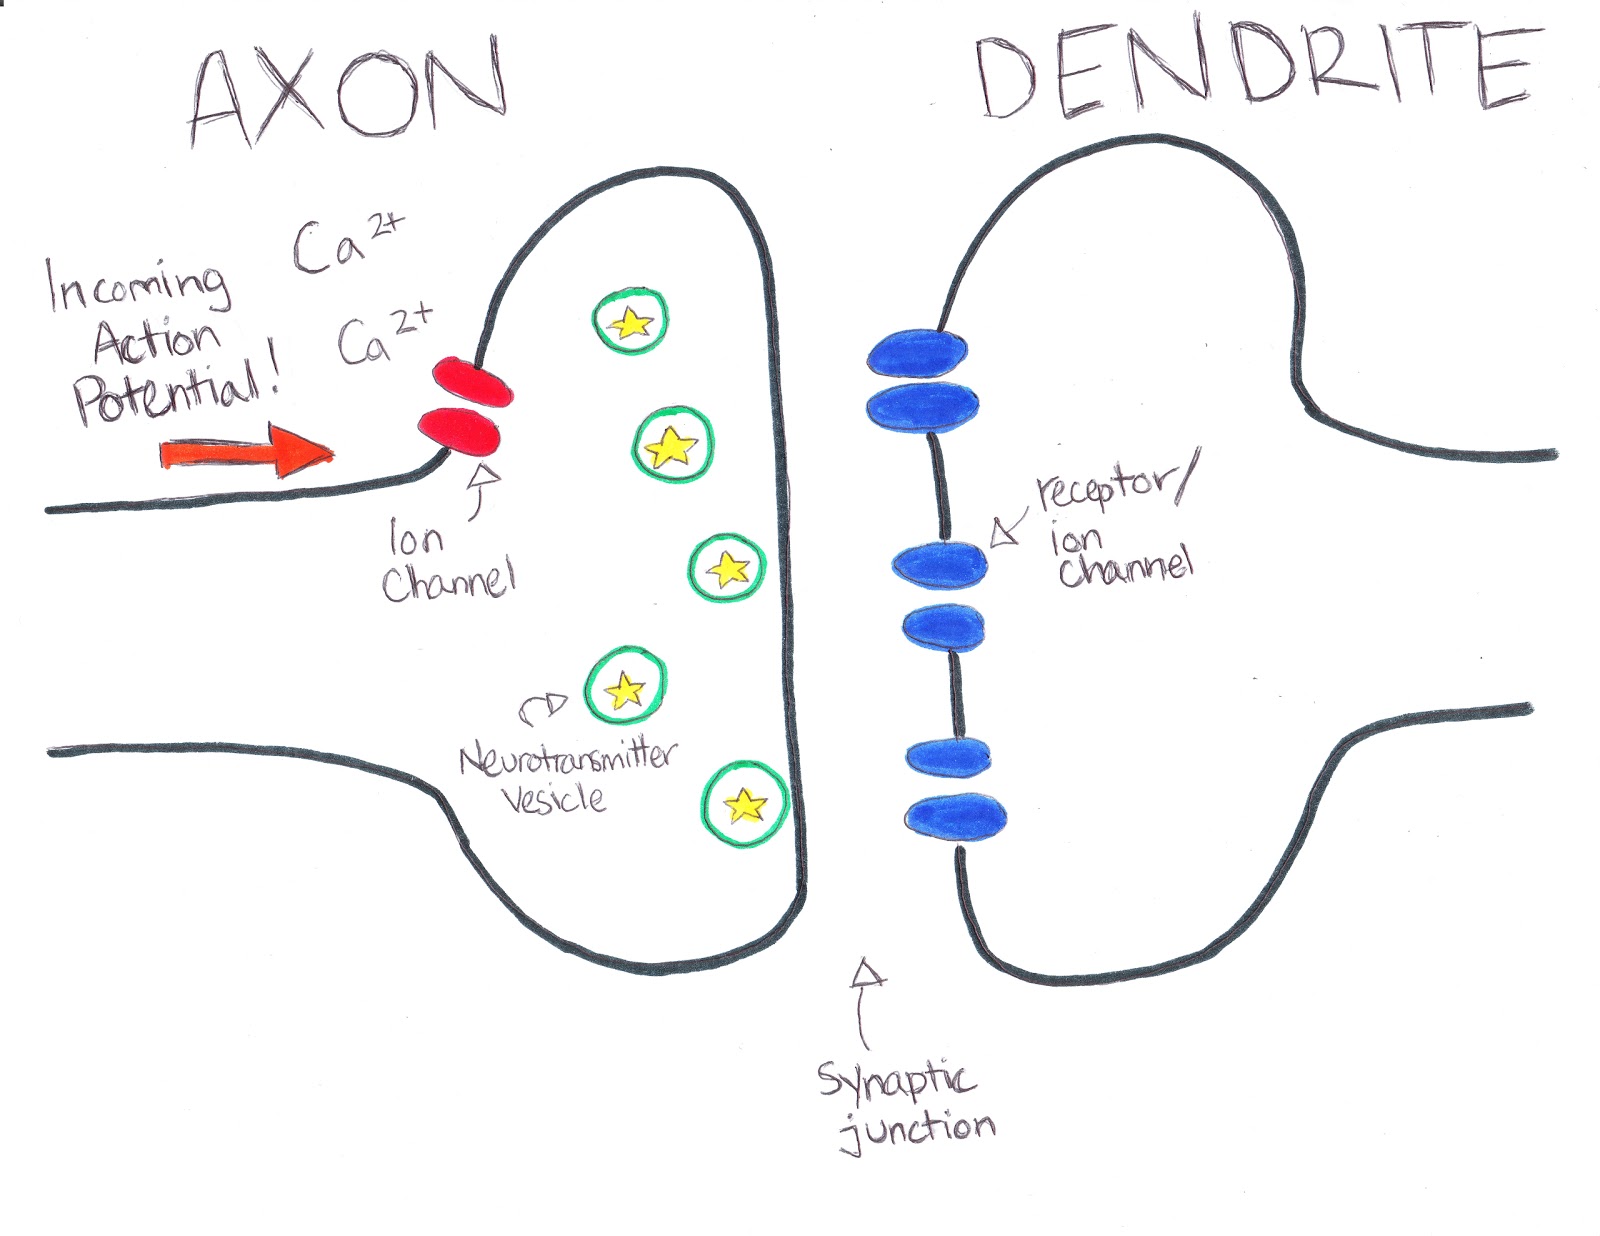 synapse brain dendrite axon